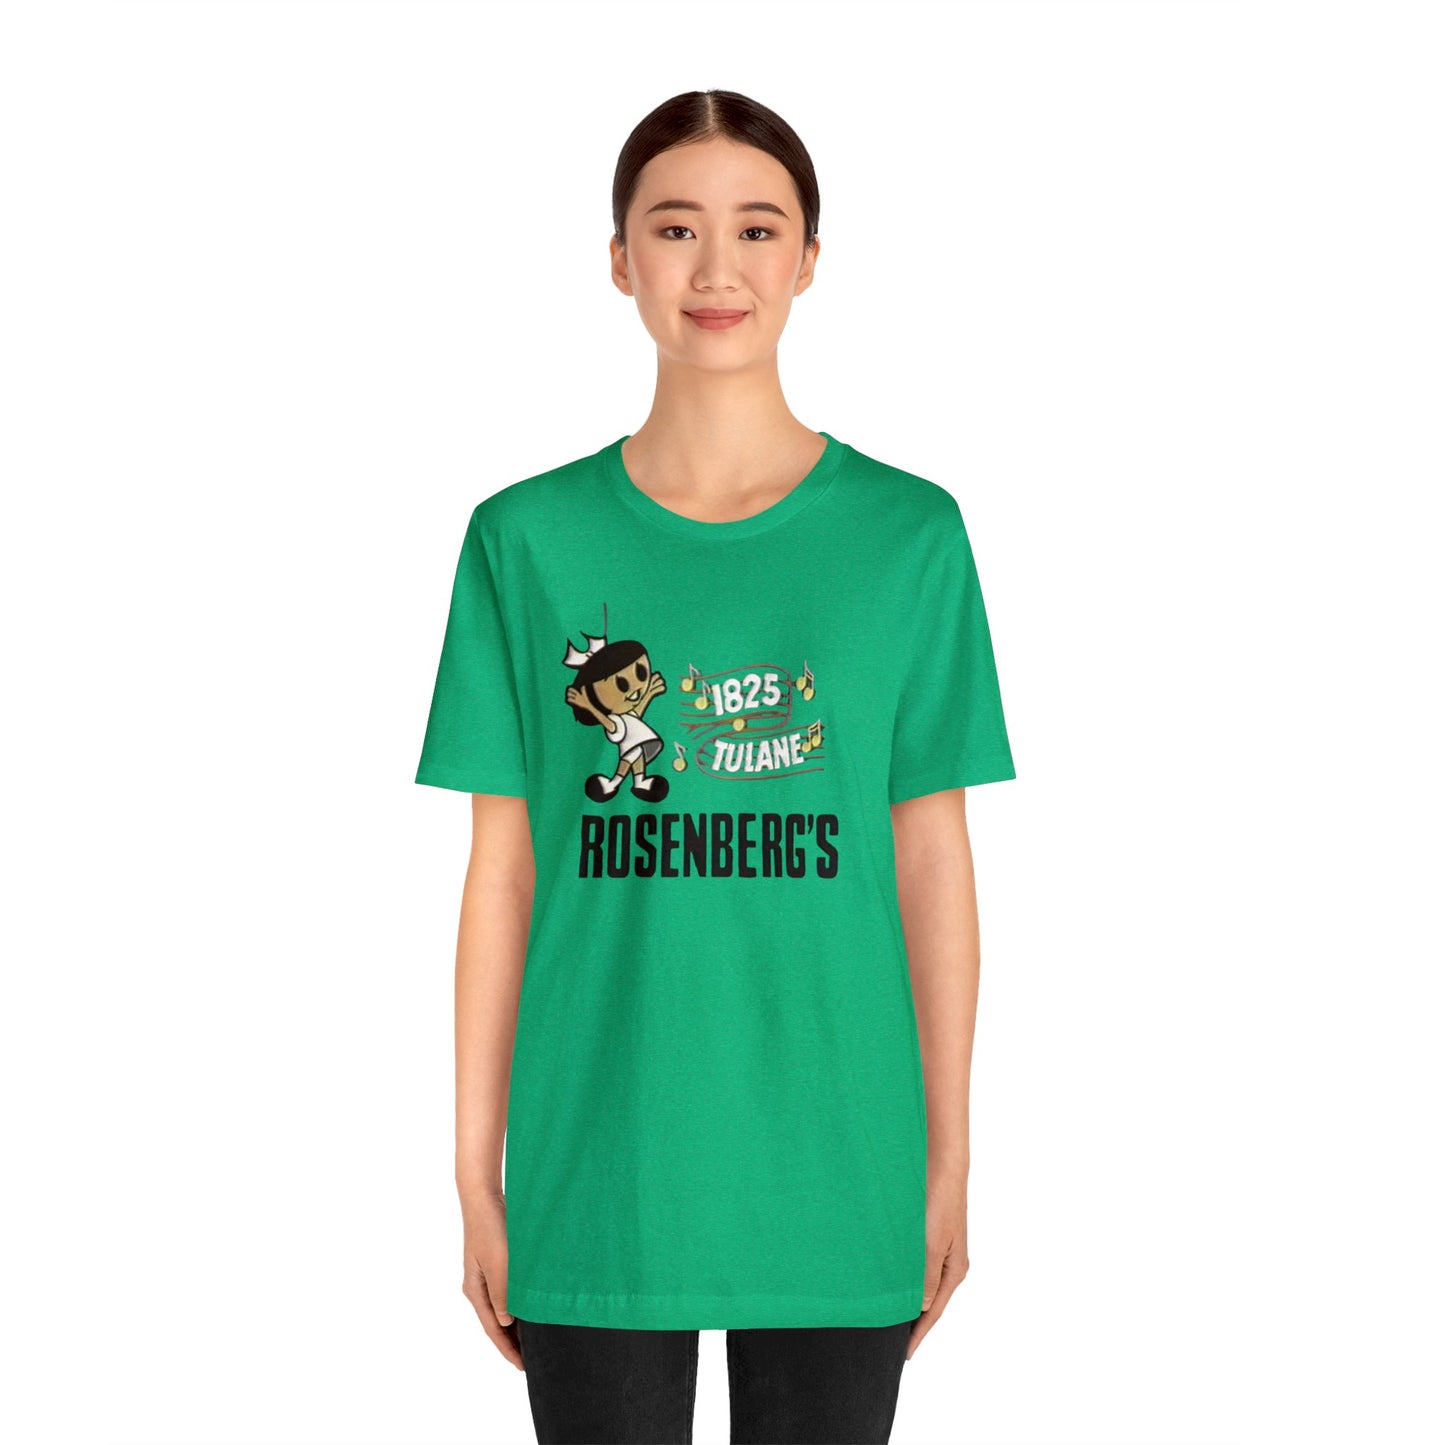 Men's Rosenberg's T-shirt